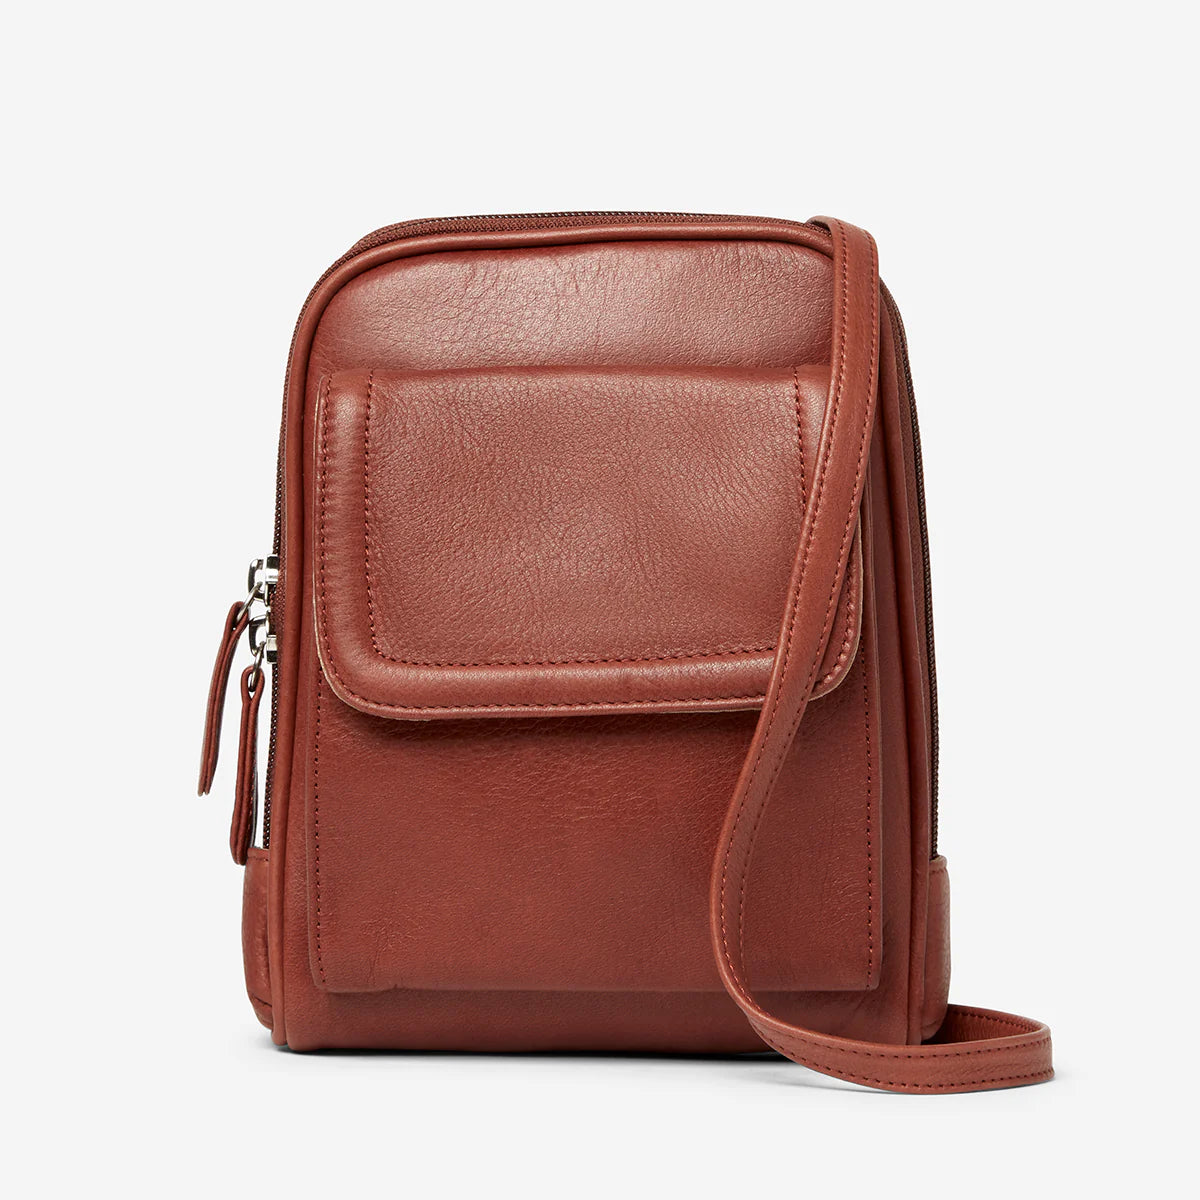 Osgoode Marley Leather RFID Mini Organizer Handbag/Purse- 4601